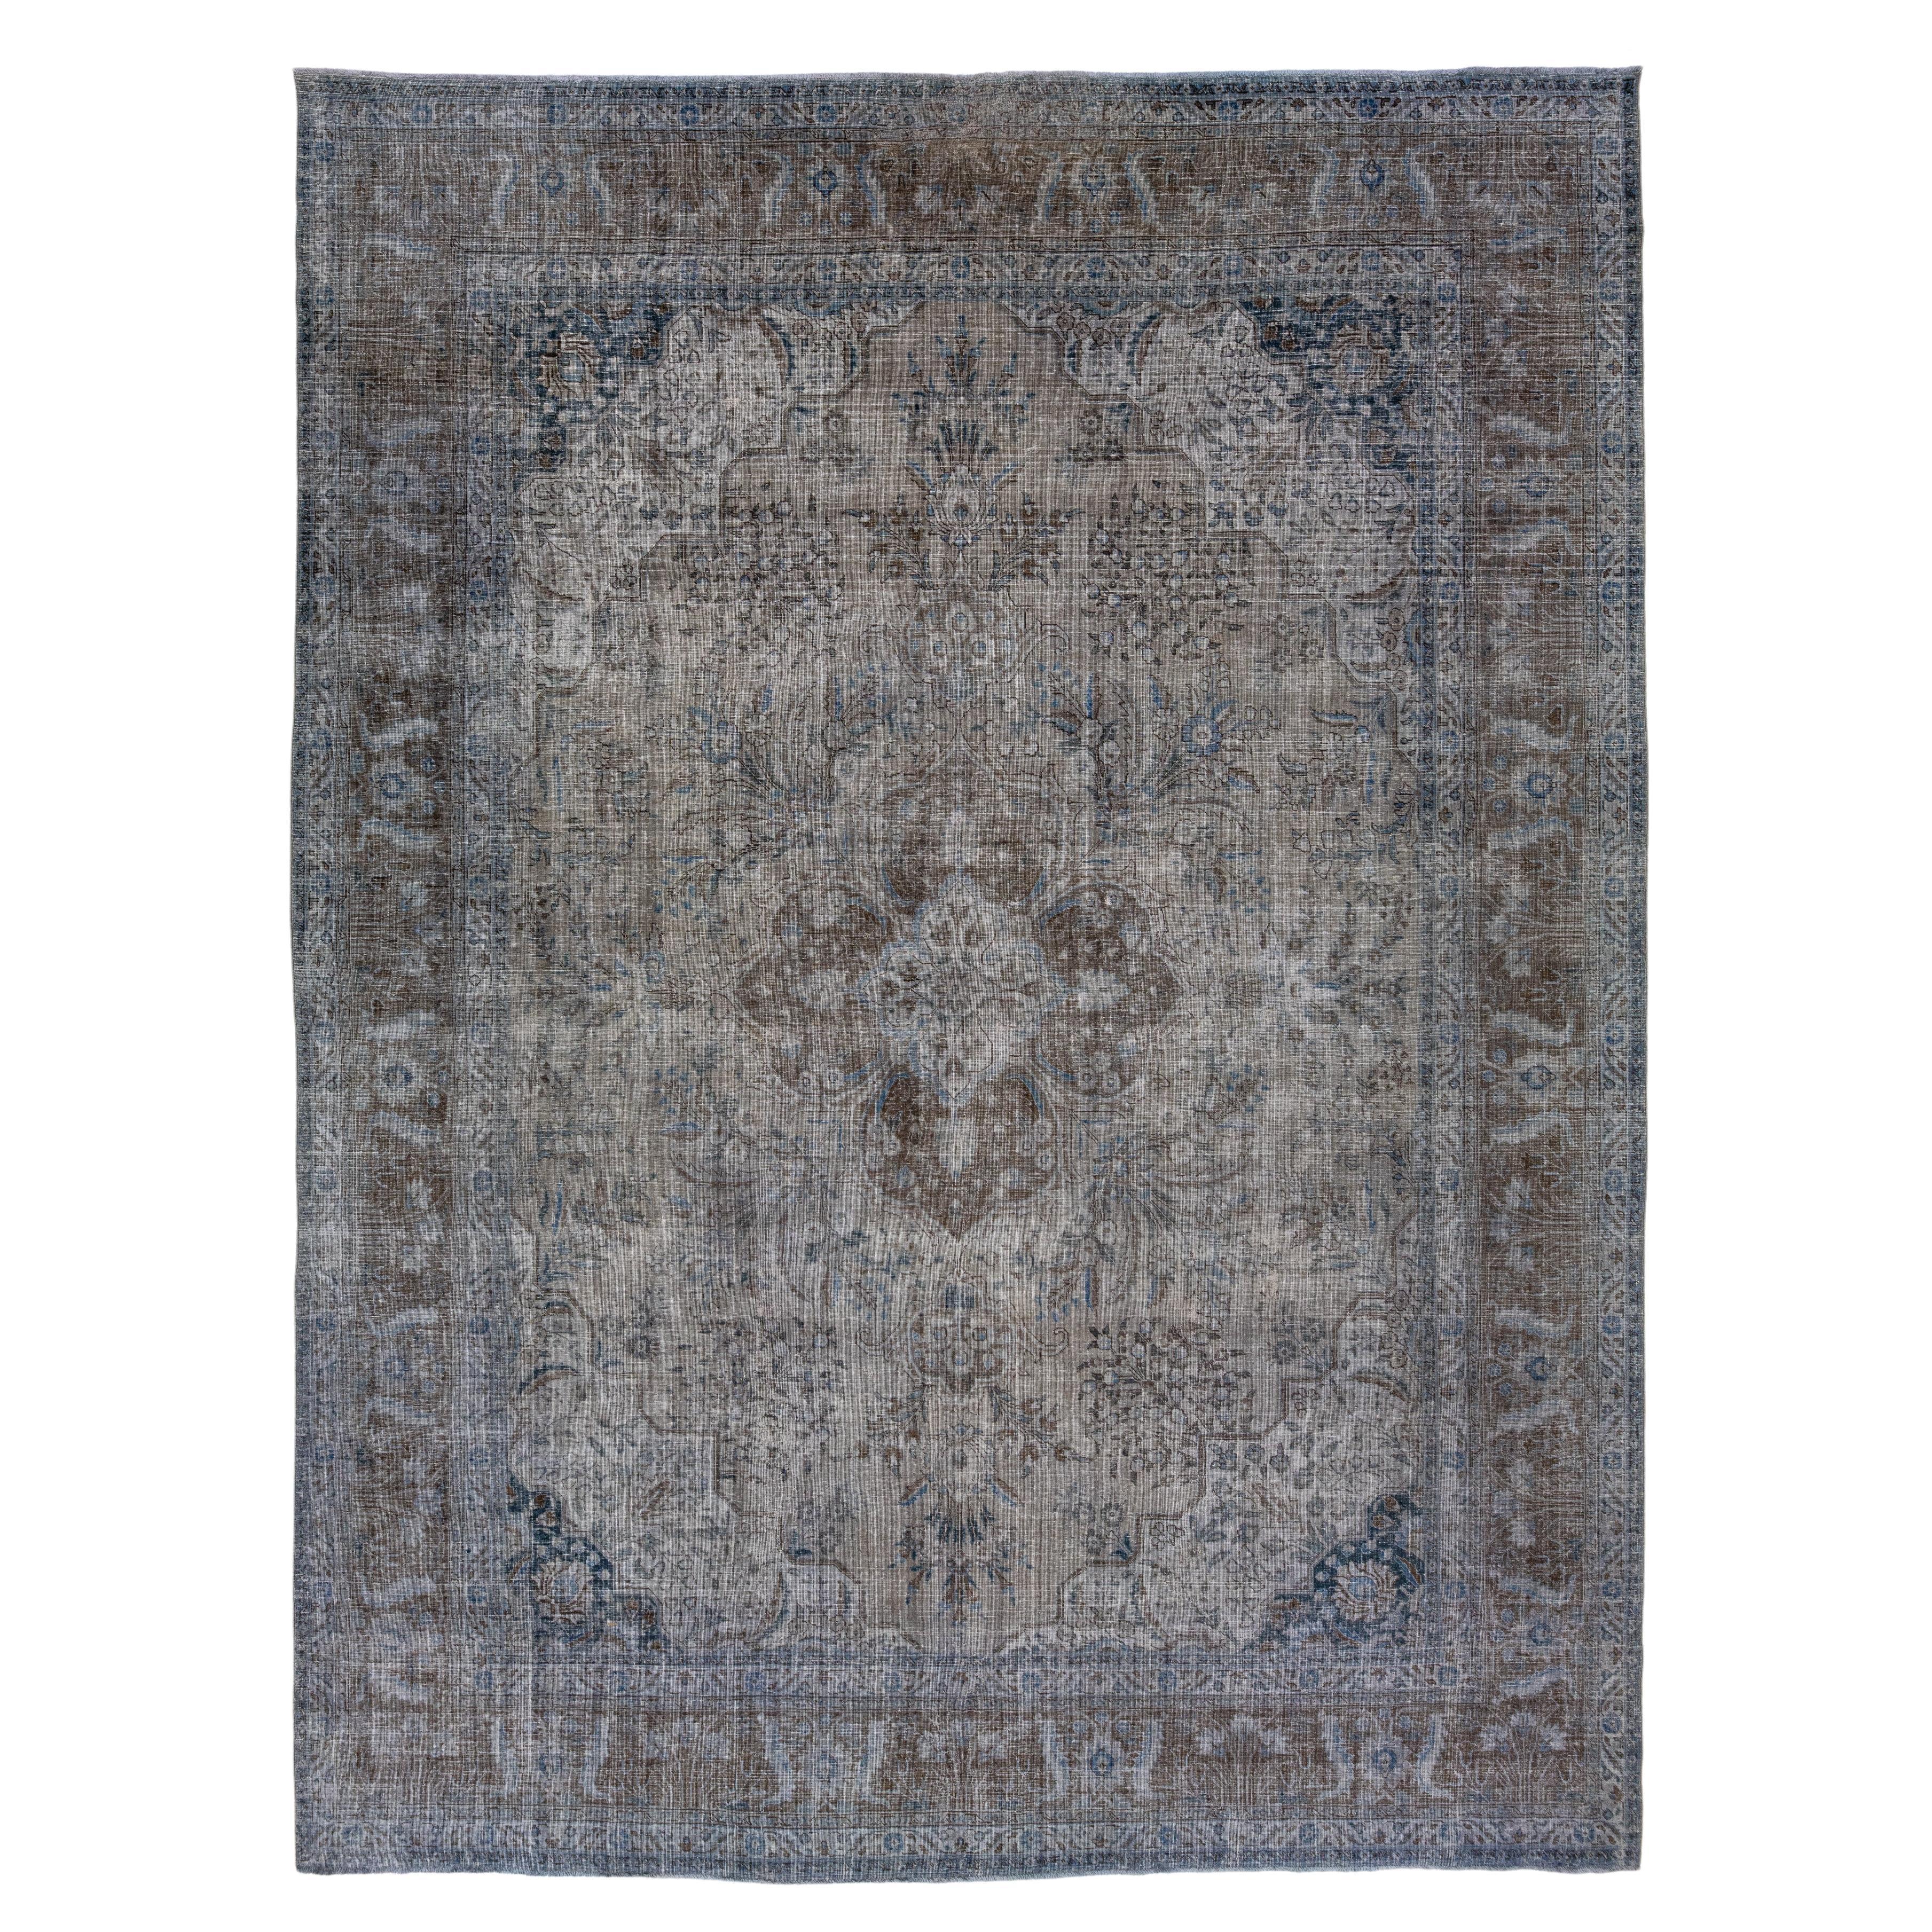 Ancien tapis persan teinté gris avec motif sur toute la surface